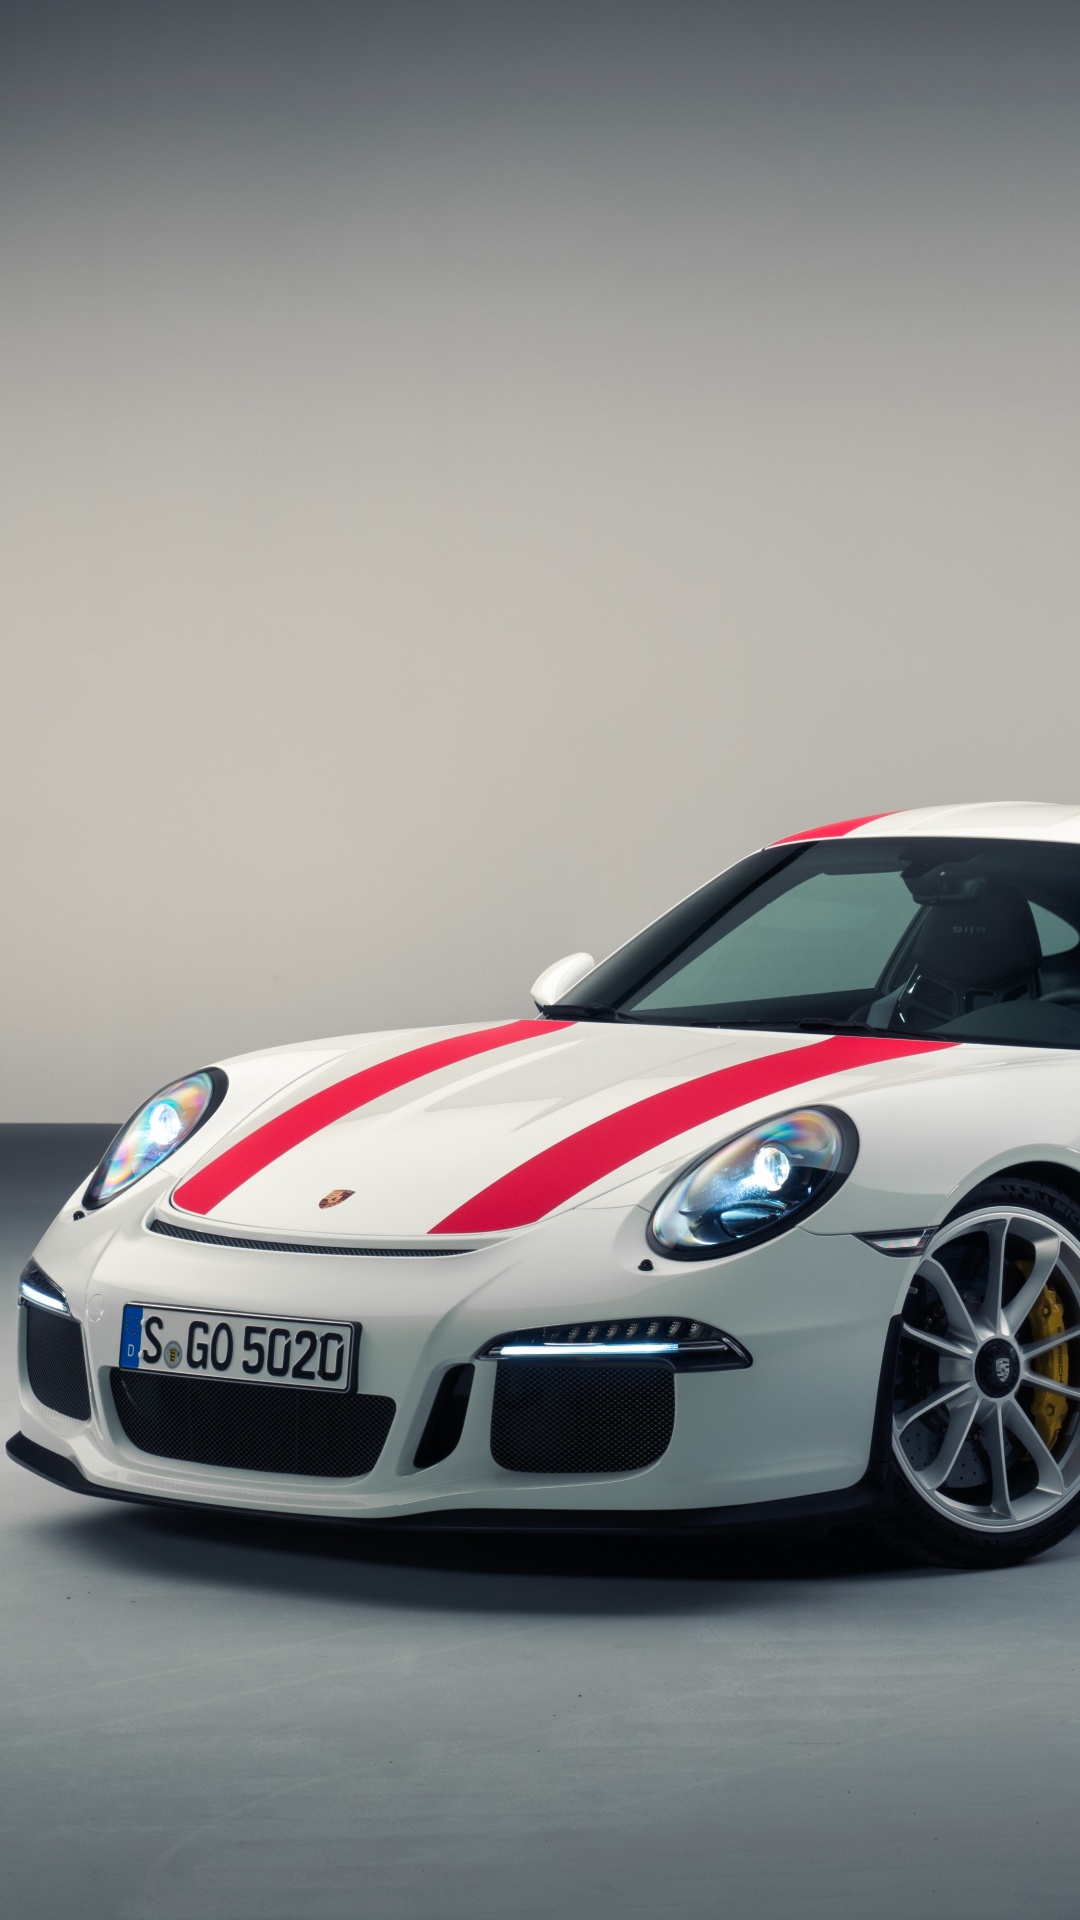 Porsche 911 Blanche et Rouge. Wallpaper in 1080x1920 Resolution